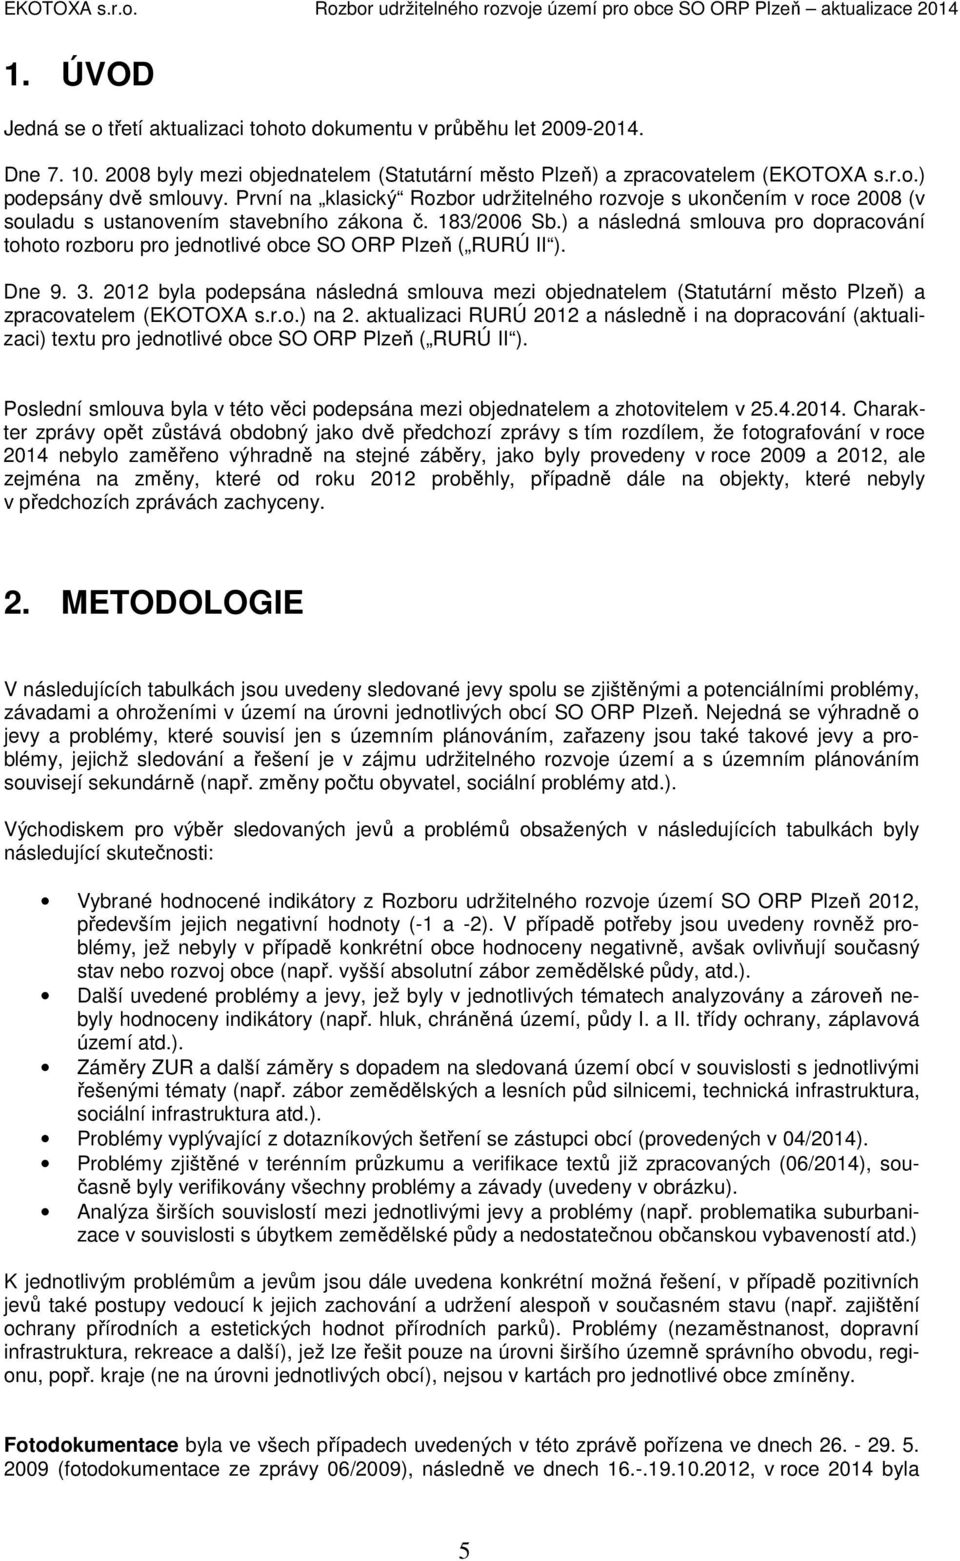 ) a následná smlouva pro dopracování tohoto rozboru pro jednotlivé obce SO ORP Plzeň ( RURÚ II ). Dne 9. 3.